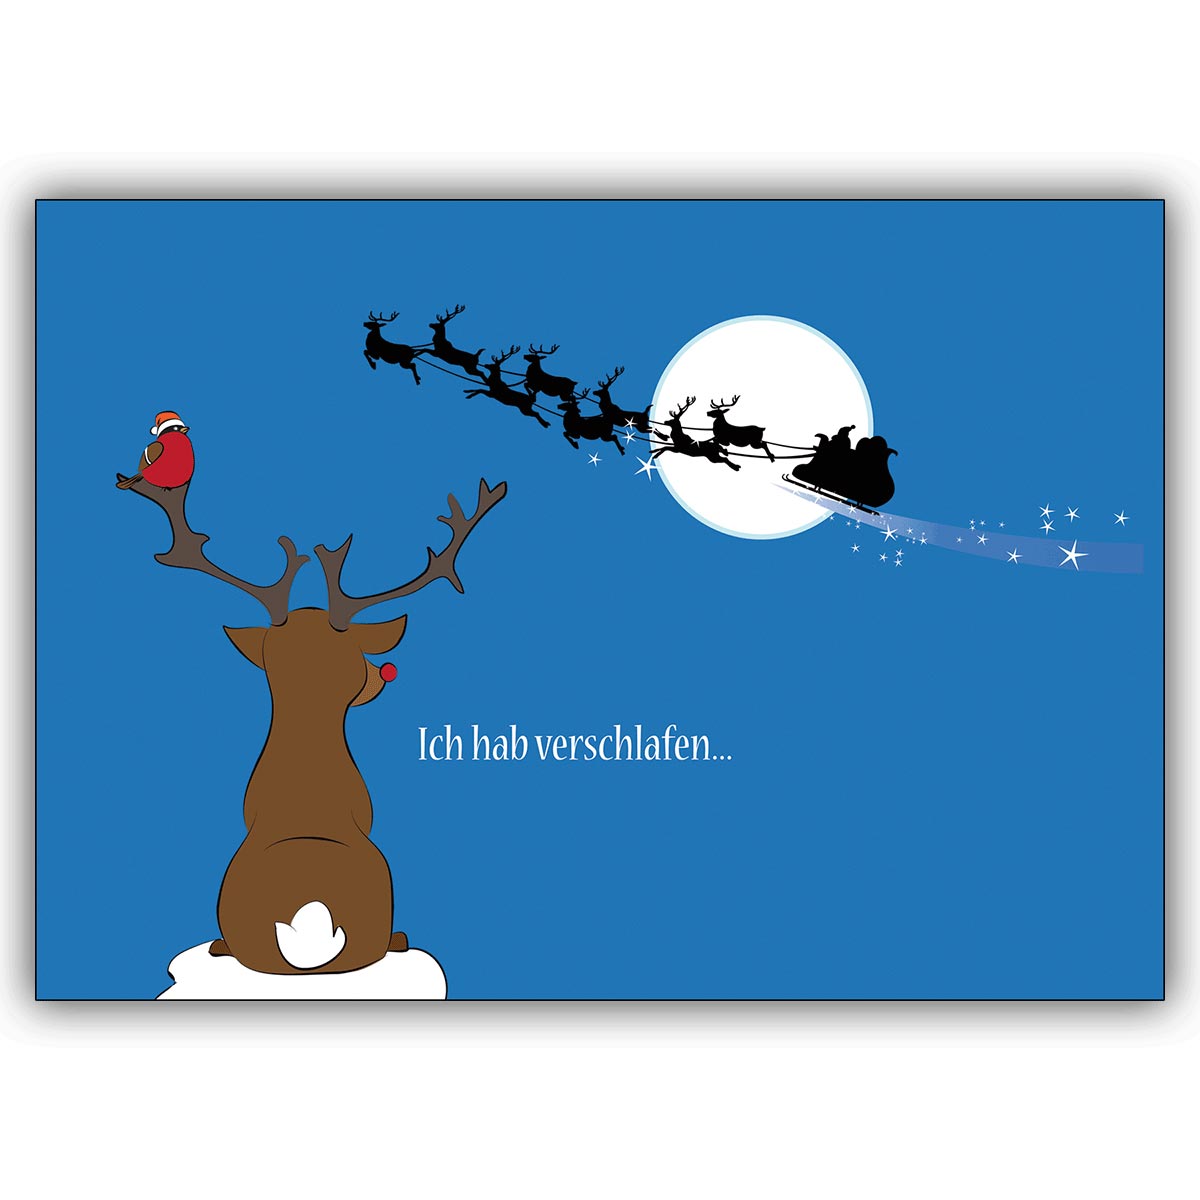 Humorvolle Last-Minute Weihnachtskarte mit kleinem Rentier